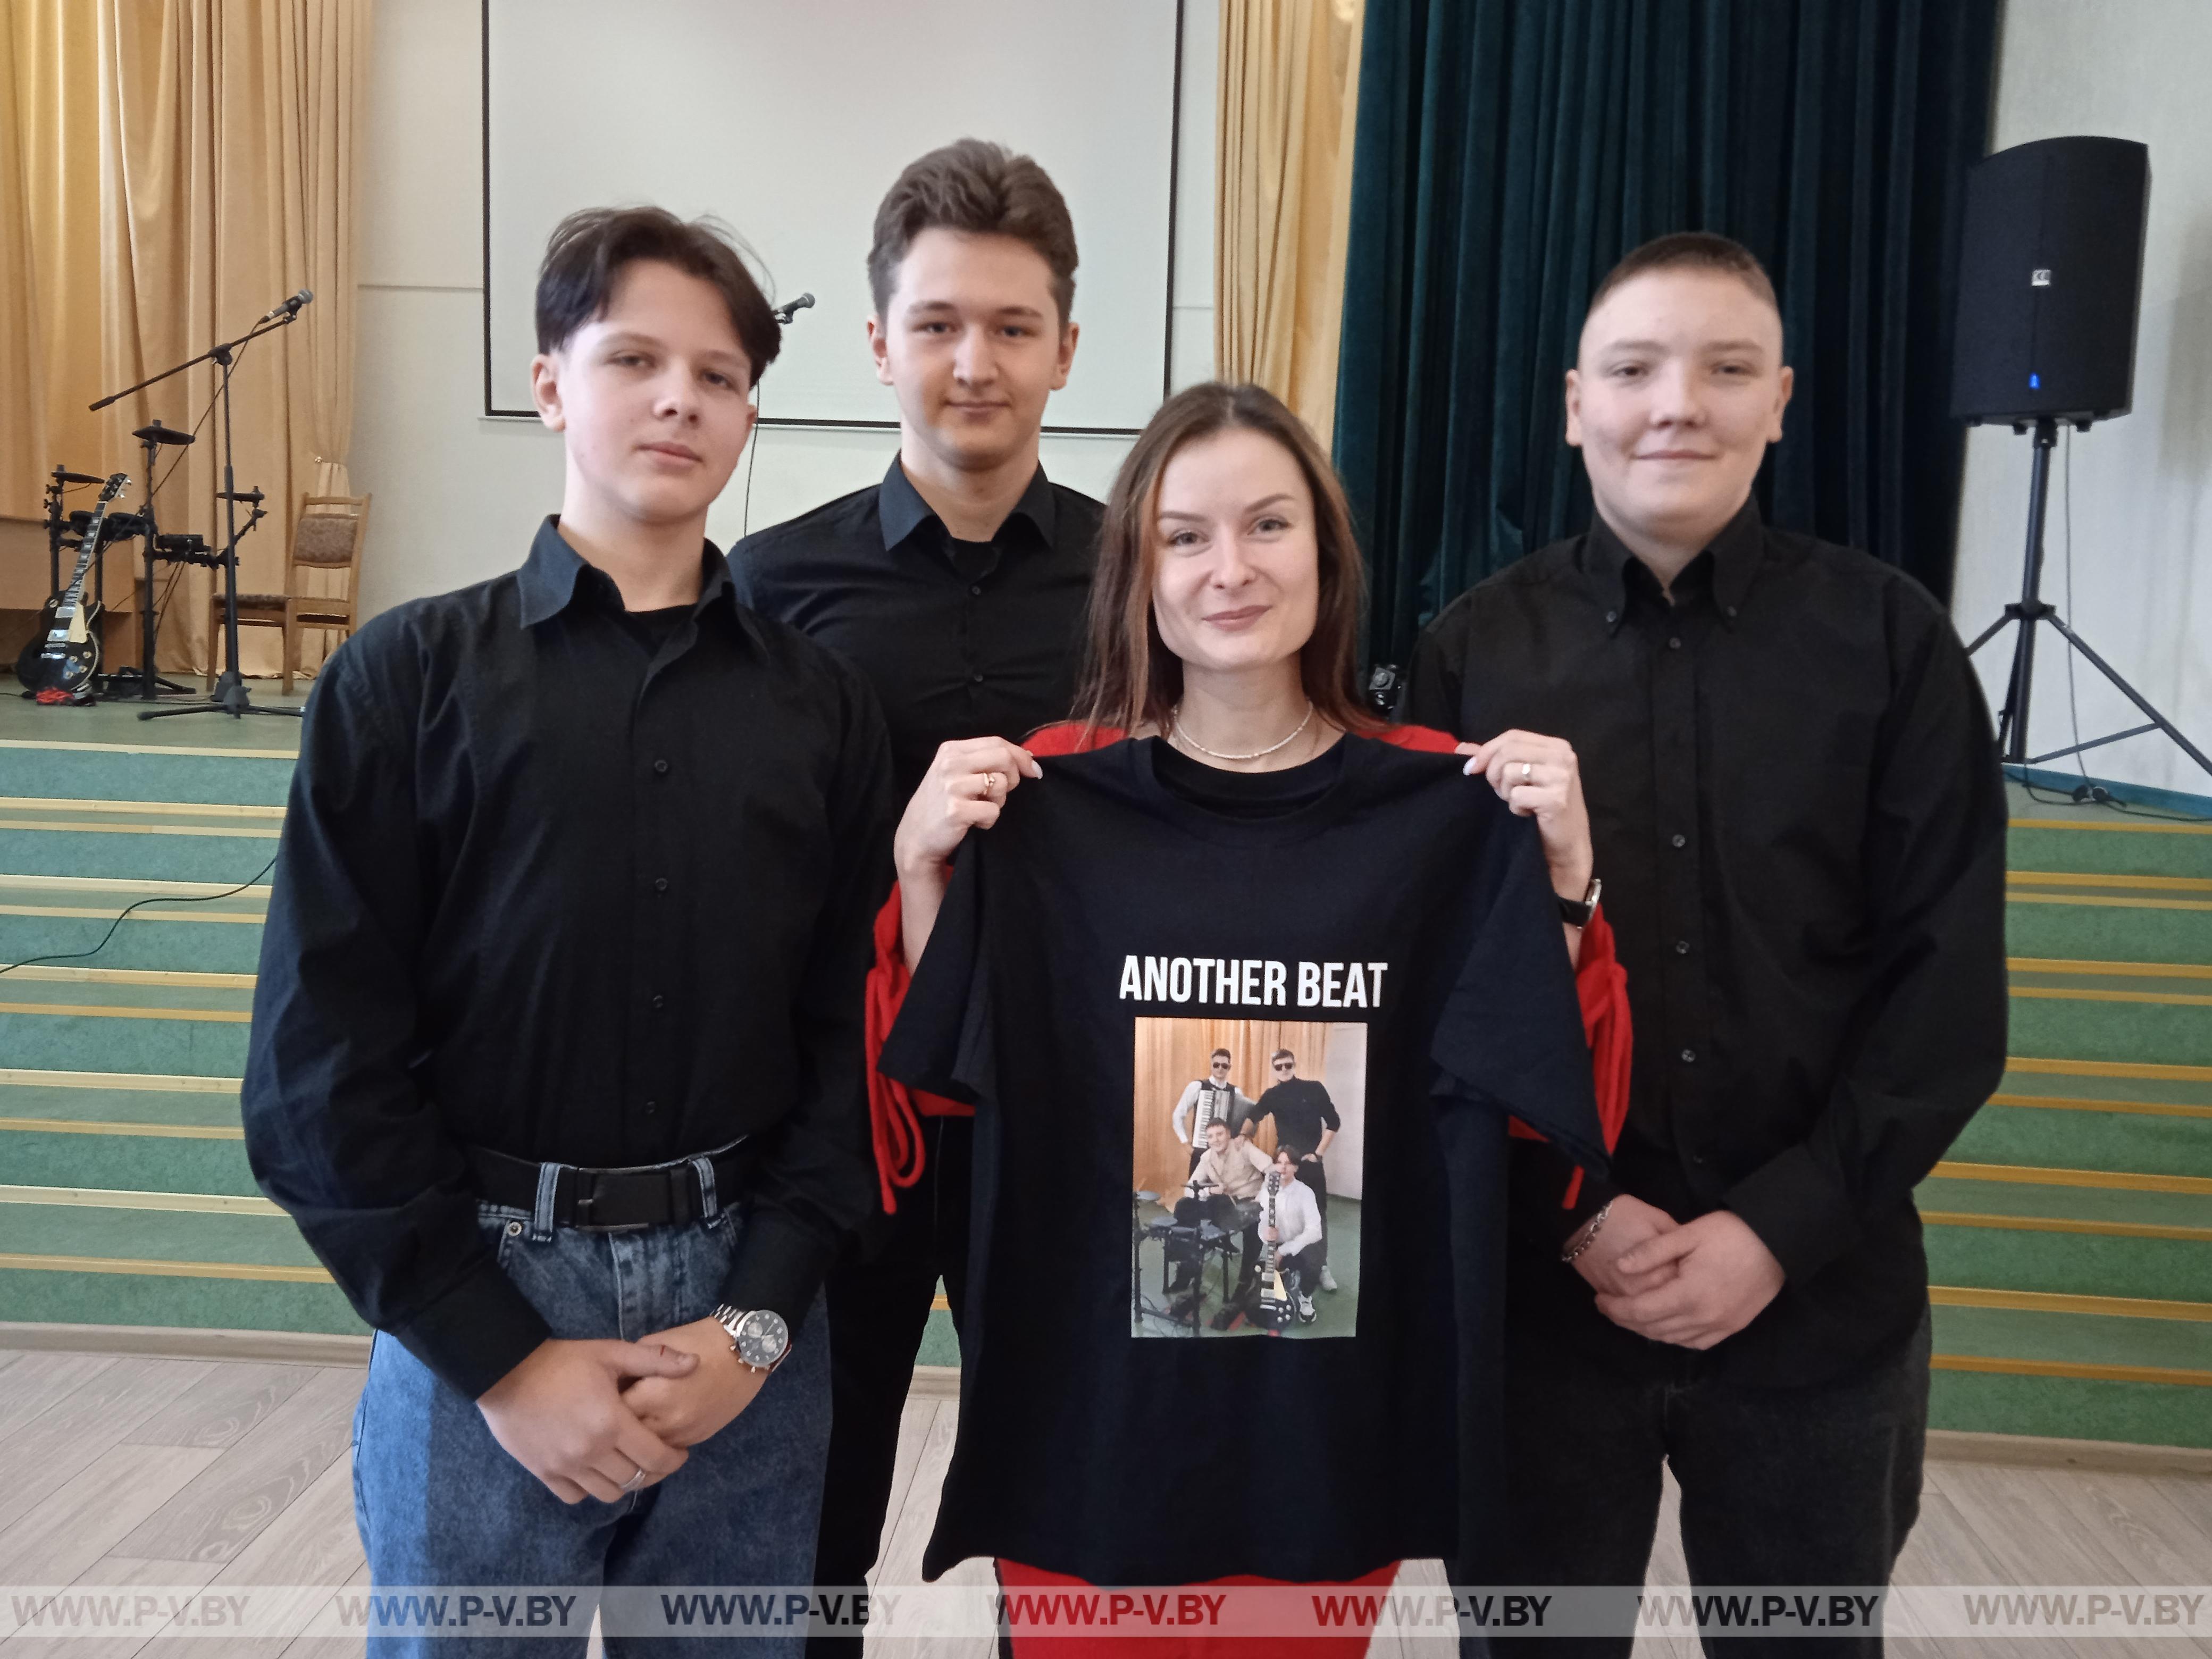 Корреспондент газеты «Пiнскi веснiк» побывала на репетиции кавер-группы «Другой ритм»